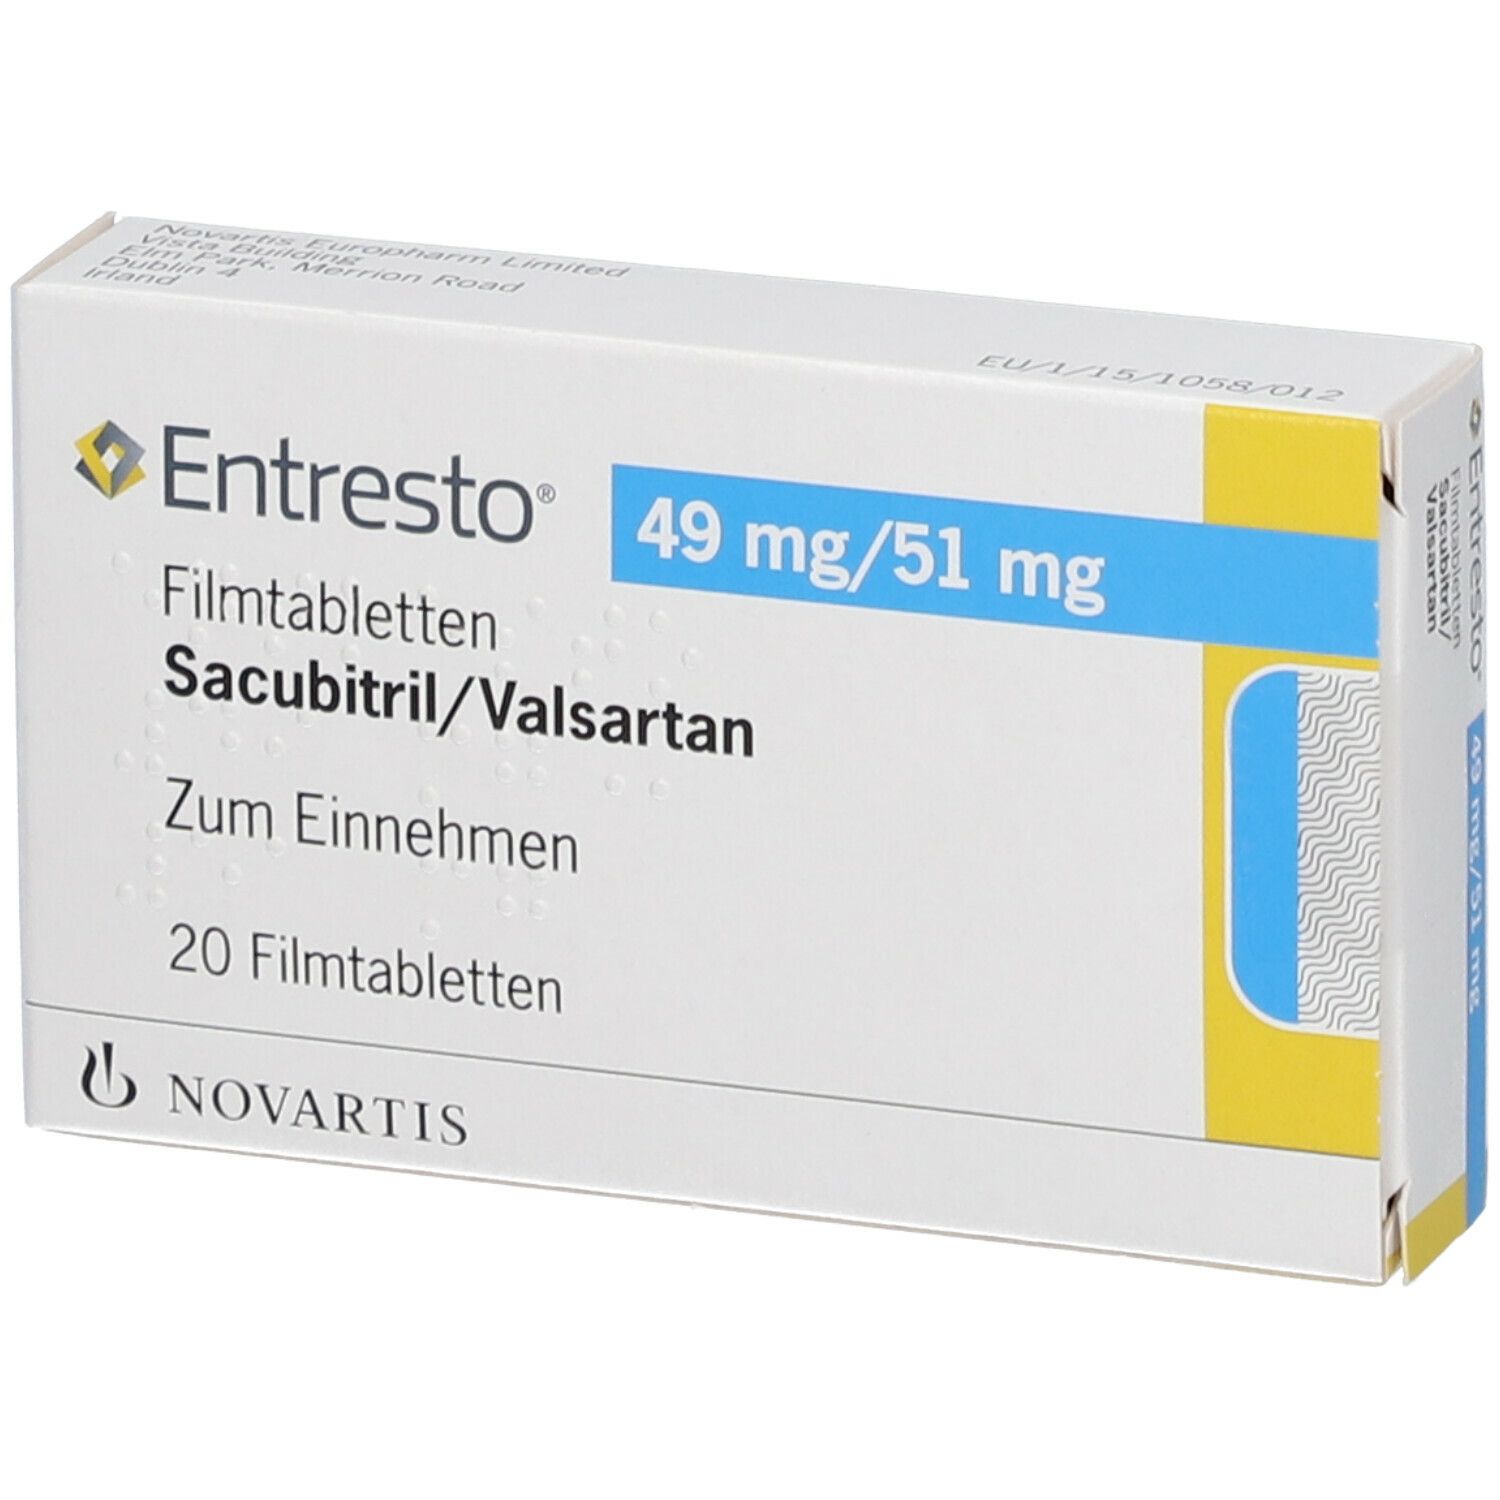 Entresto® 49 mg/51 mg